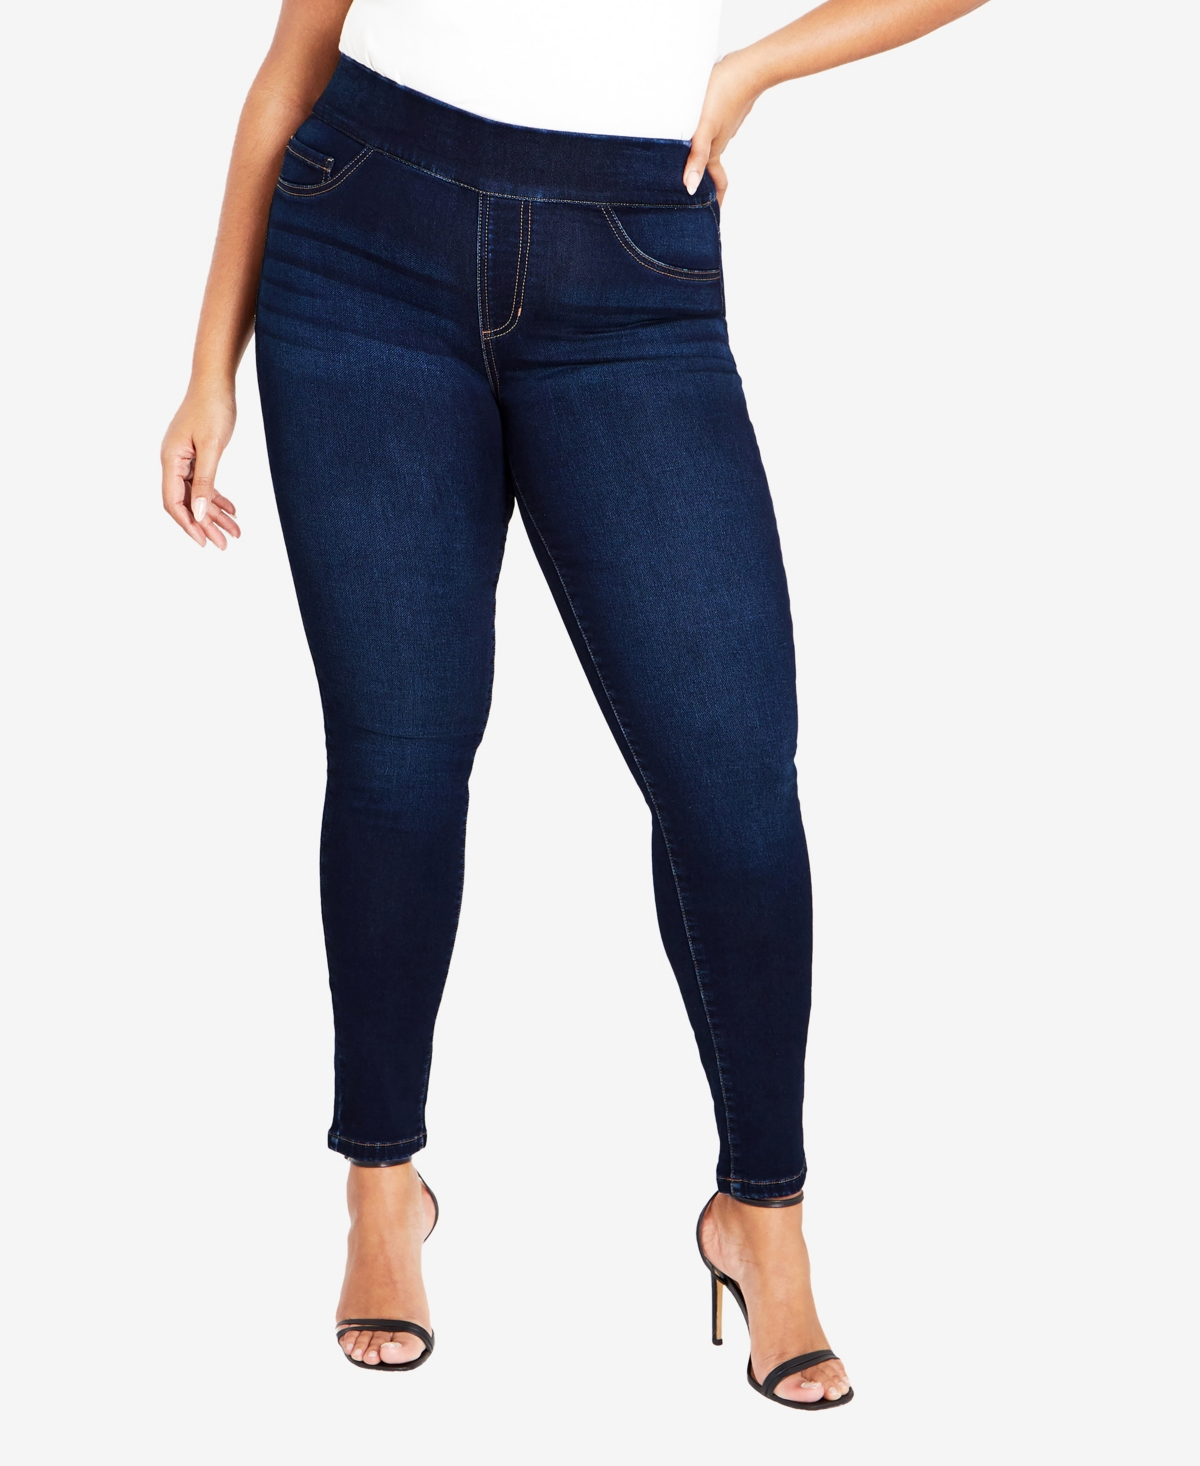 Plus Size Hi Rise Jegging Tall Length Jeans - Black